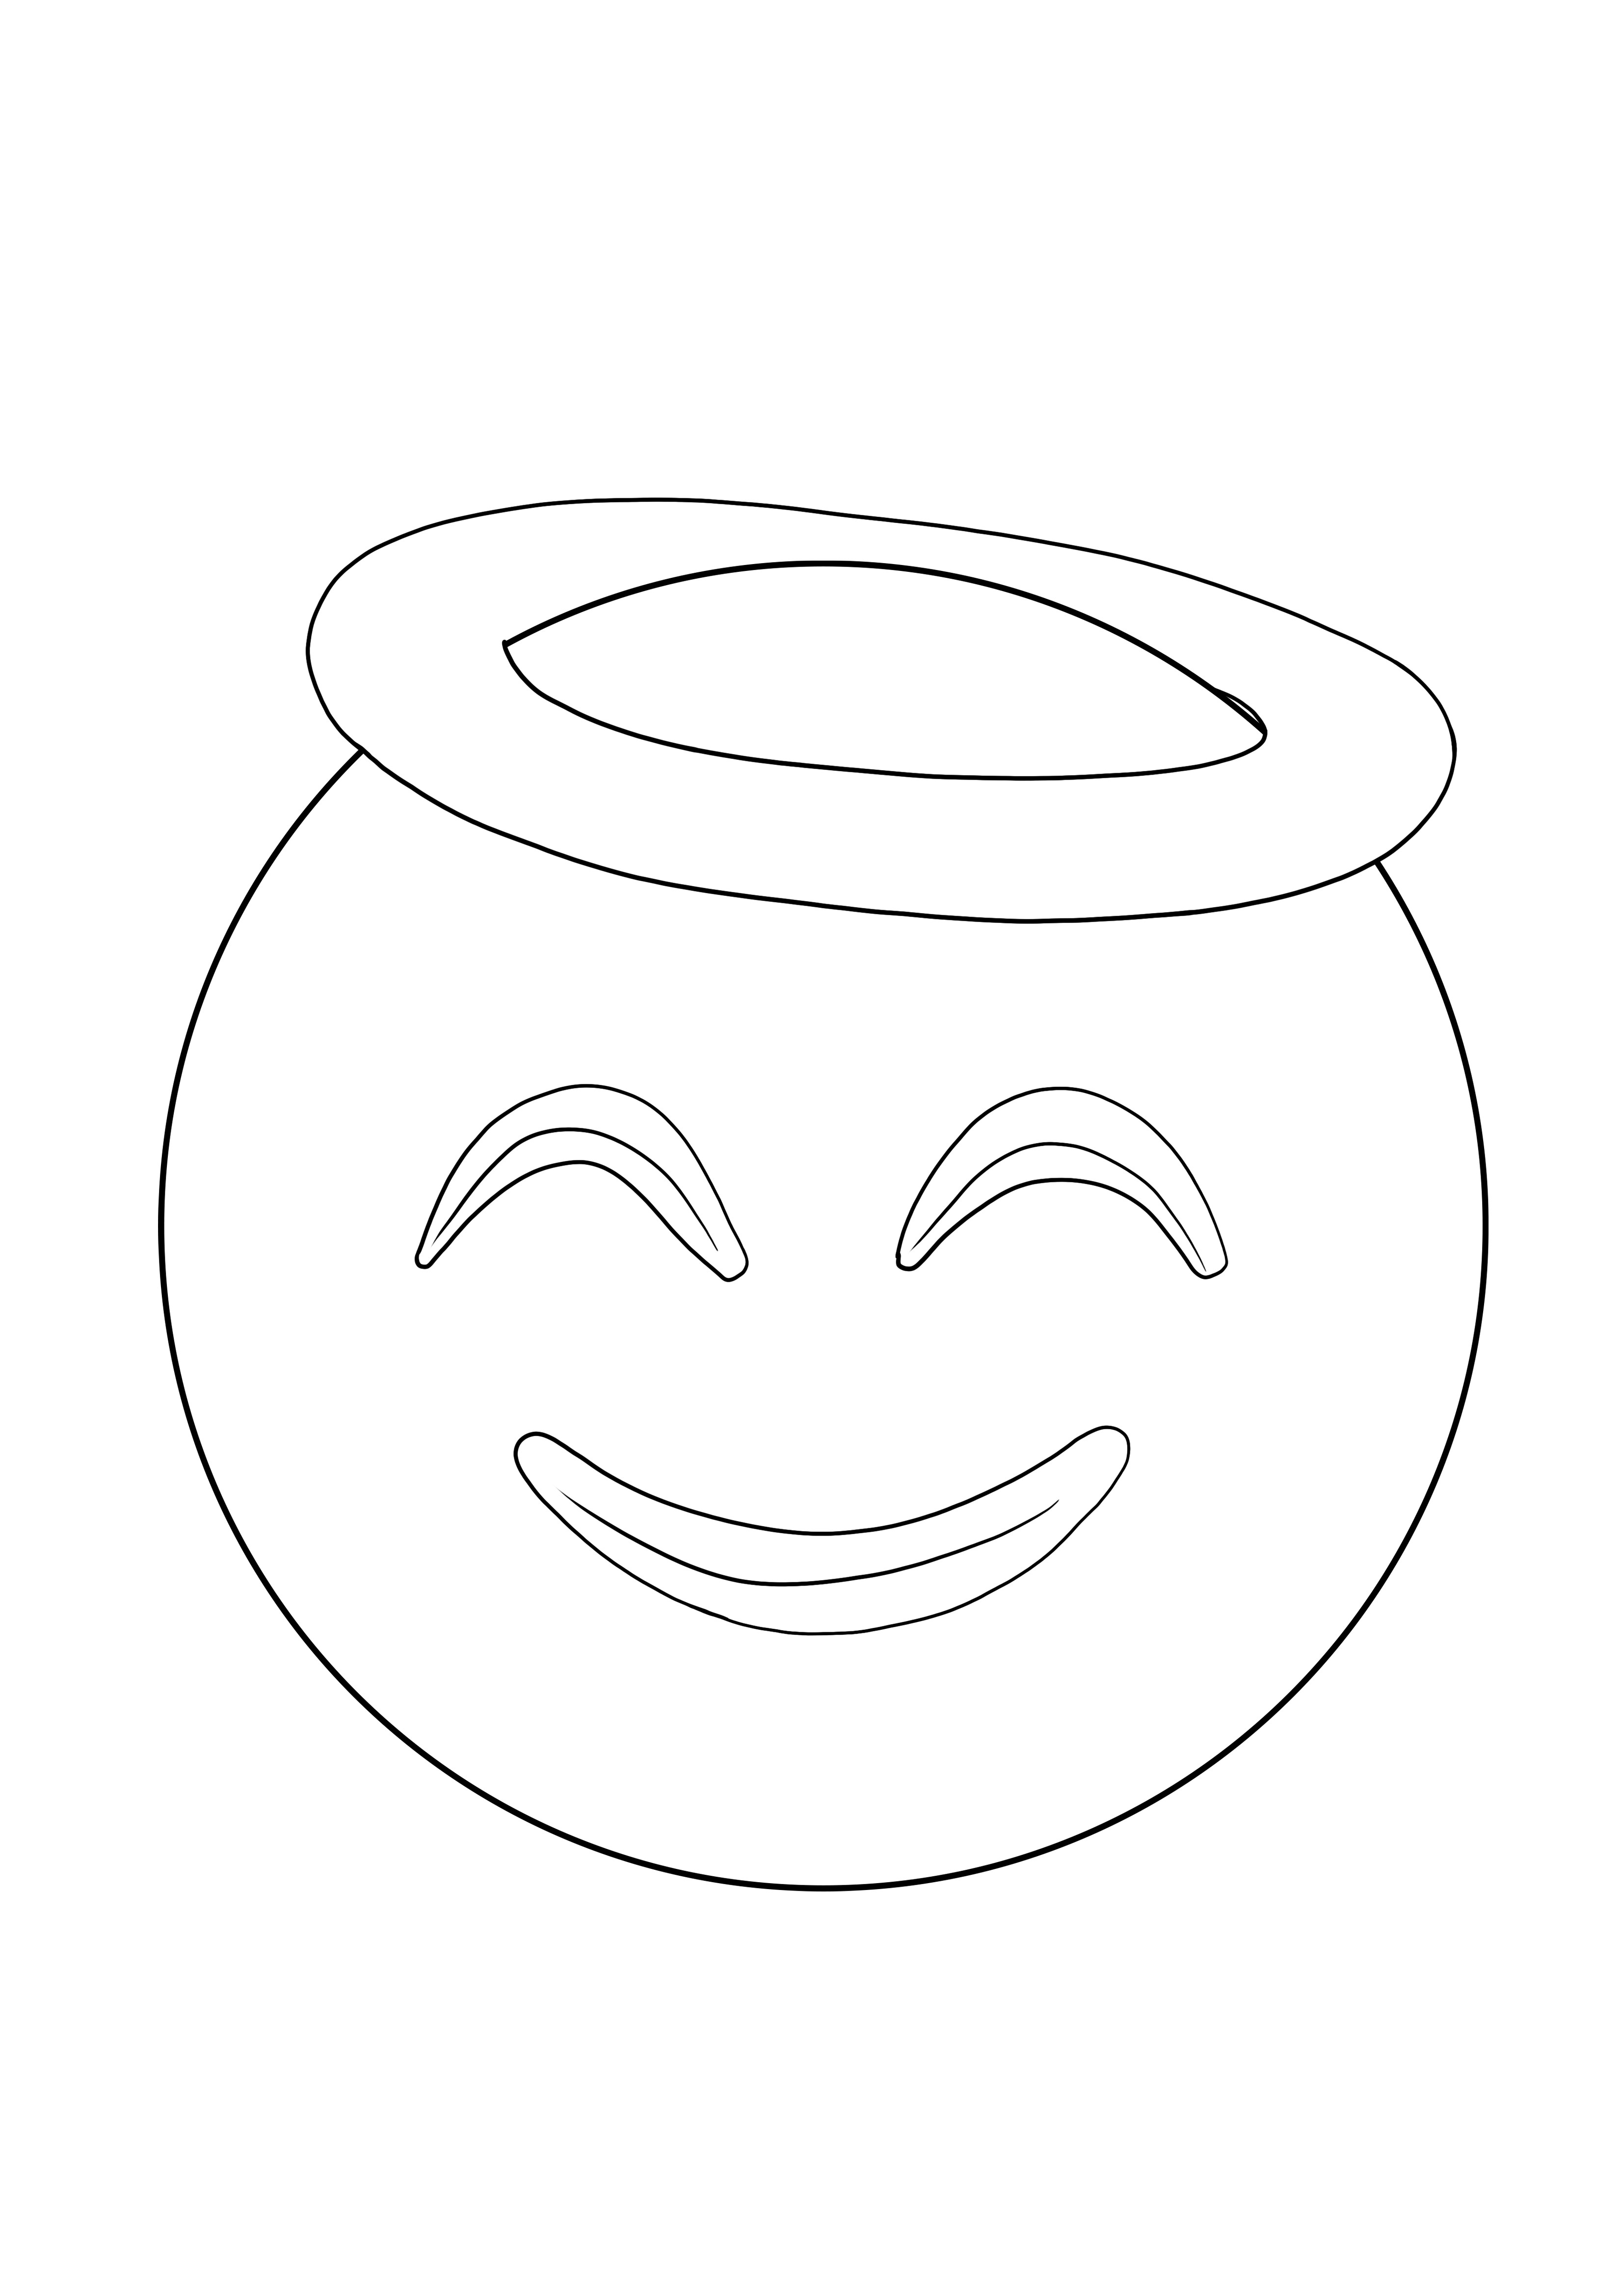 Image à colorier de visage de cercle souriant à télécharger gratuitement